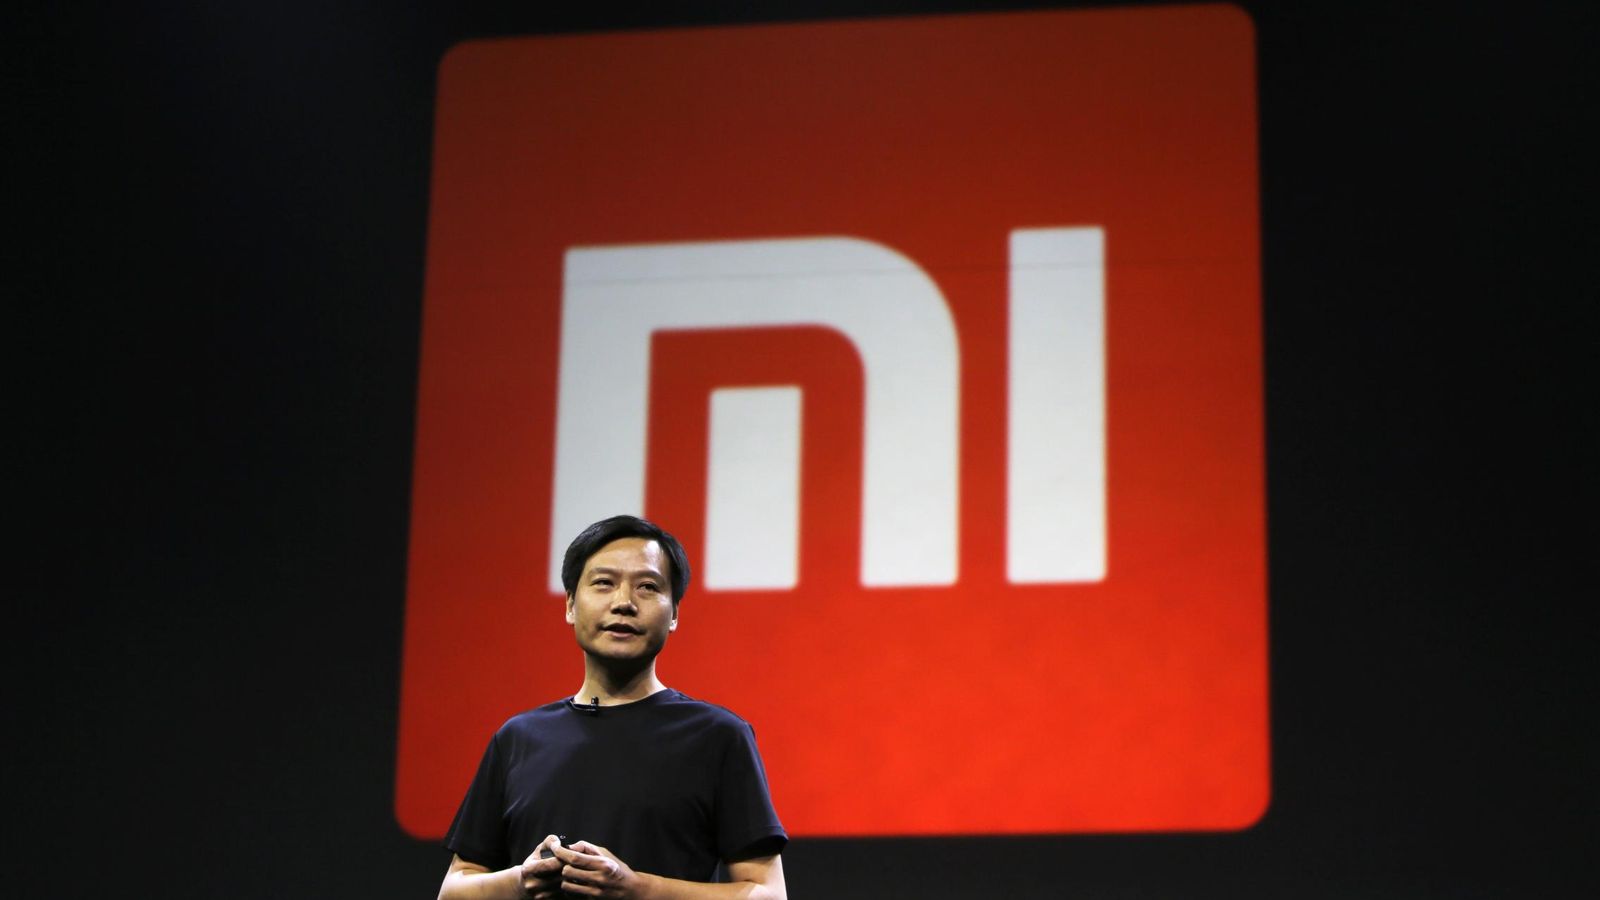 Foto: Lei jun, fundador y CEO de Xiaomi (REUTERS/Jason Lee)